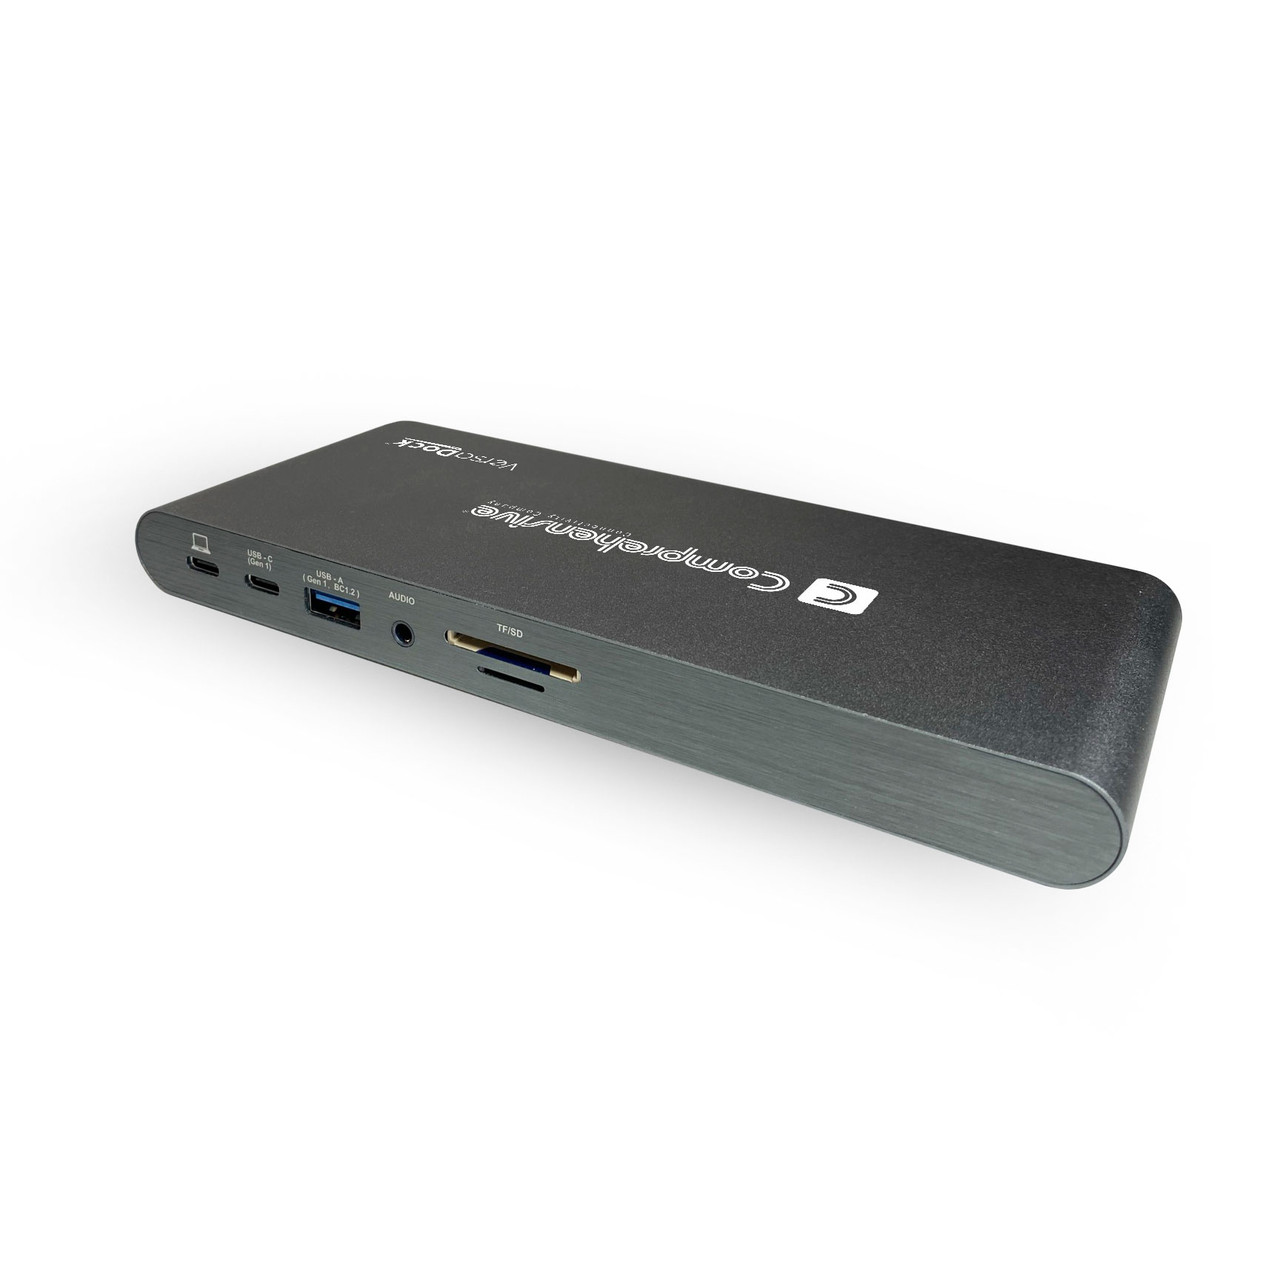 USB C PD Docking Station w/Multi-Port USB 3.1 Hub & Display